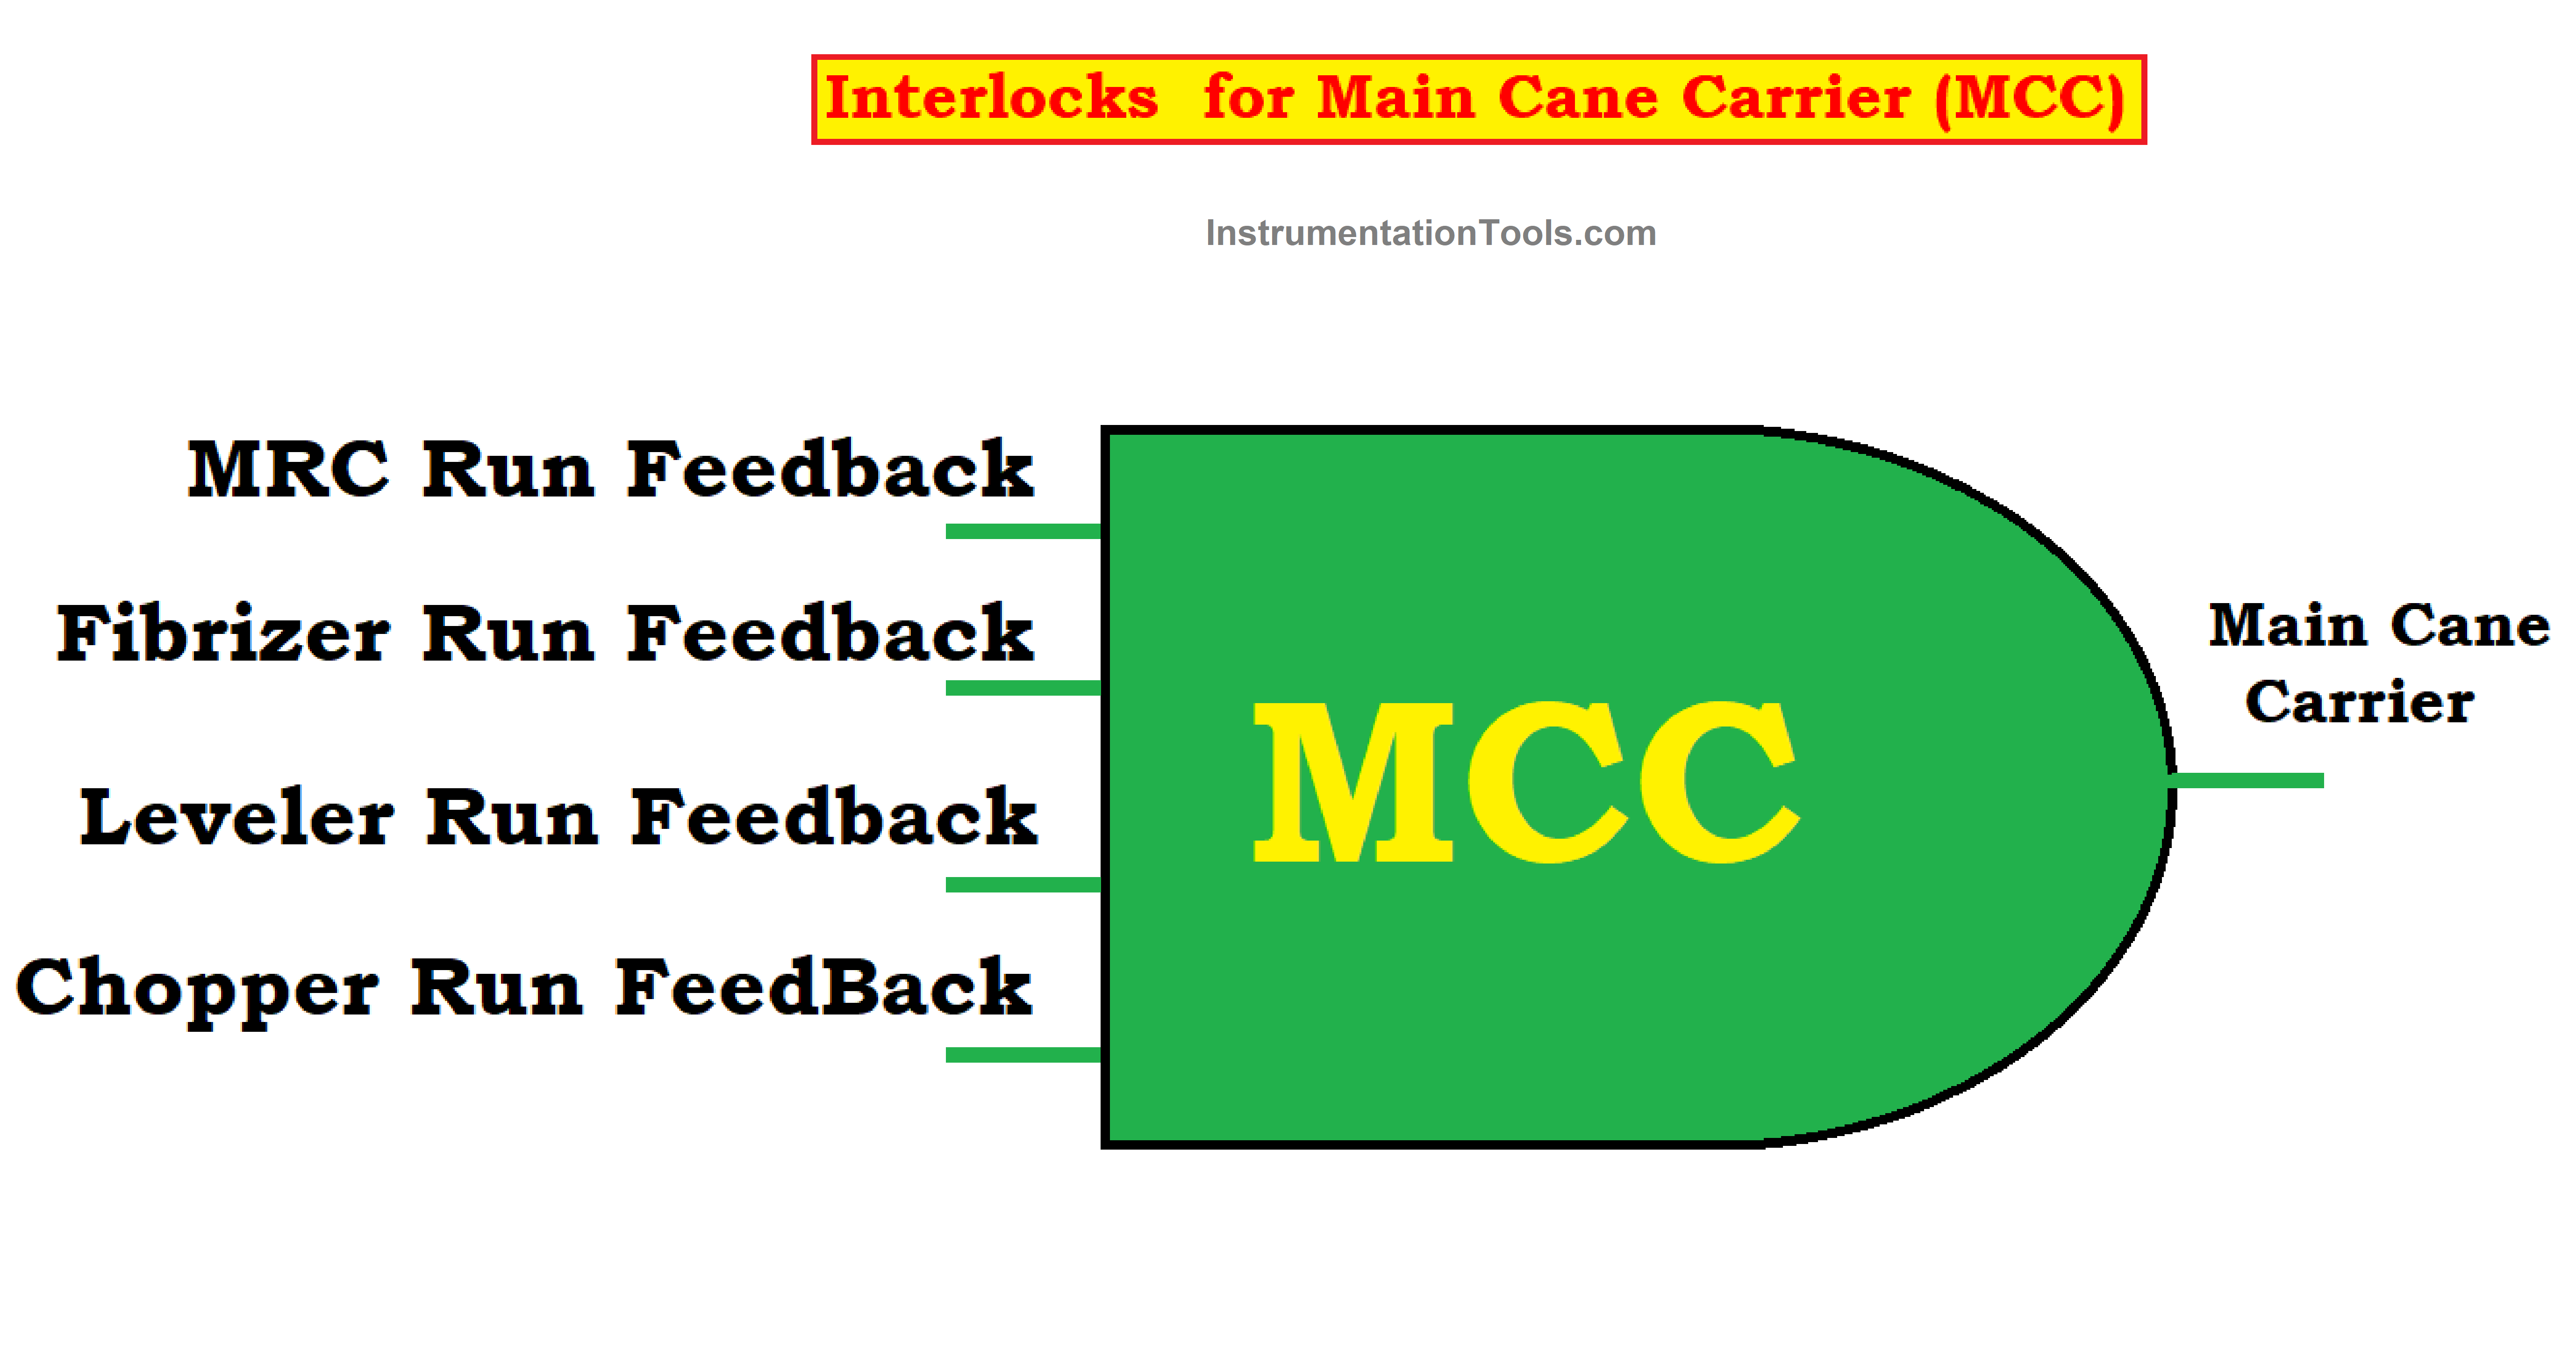 Interlocks for Main Cane Carrier (MCC)